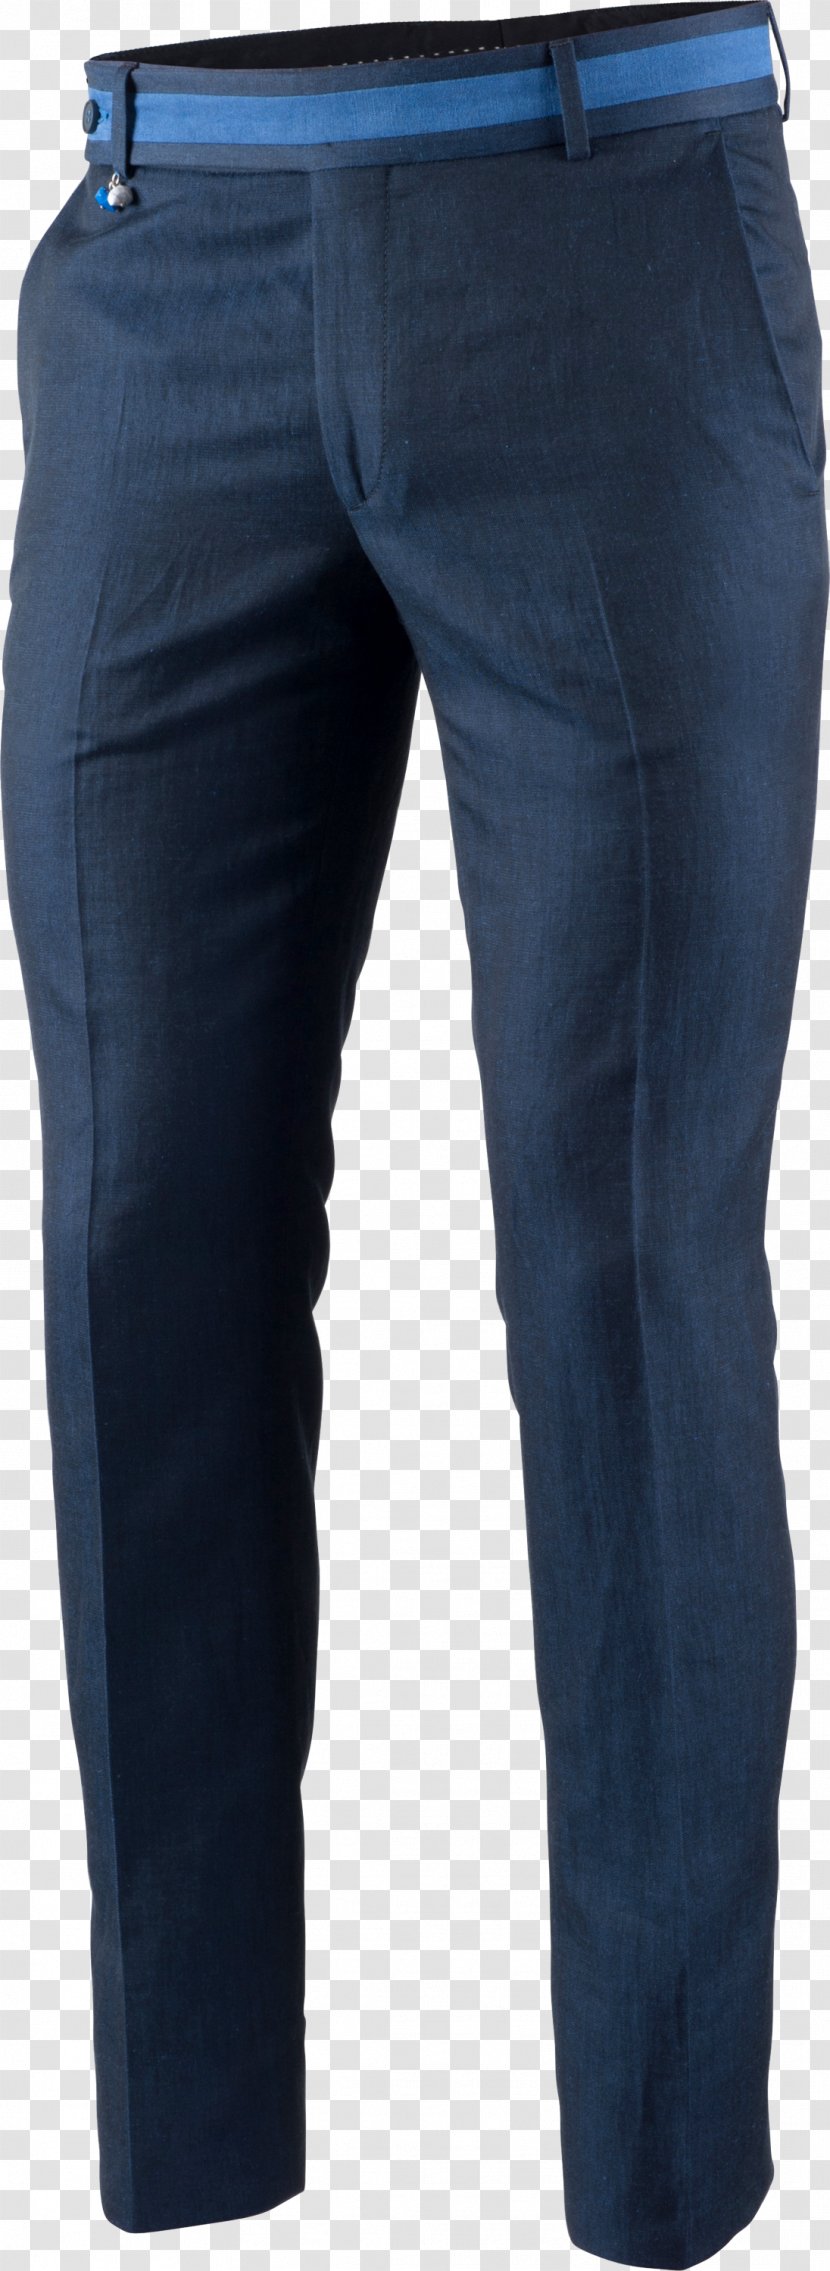 Jeans Denim Slim-fit Pants Pocket Clothing - Lee Transparent PNG